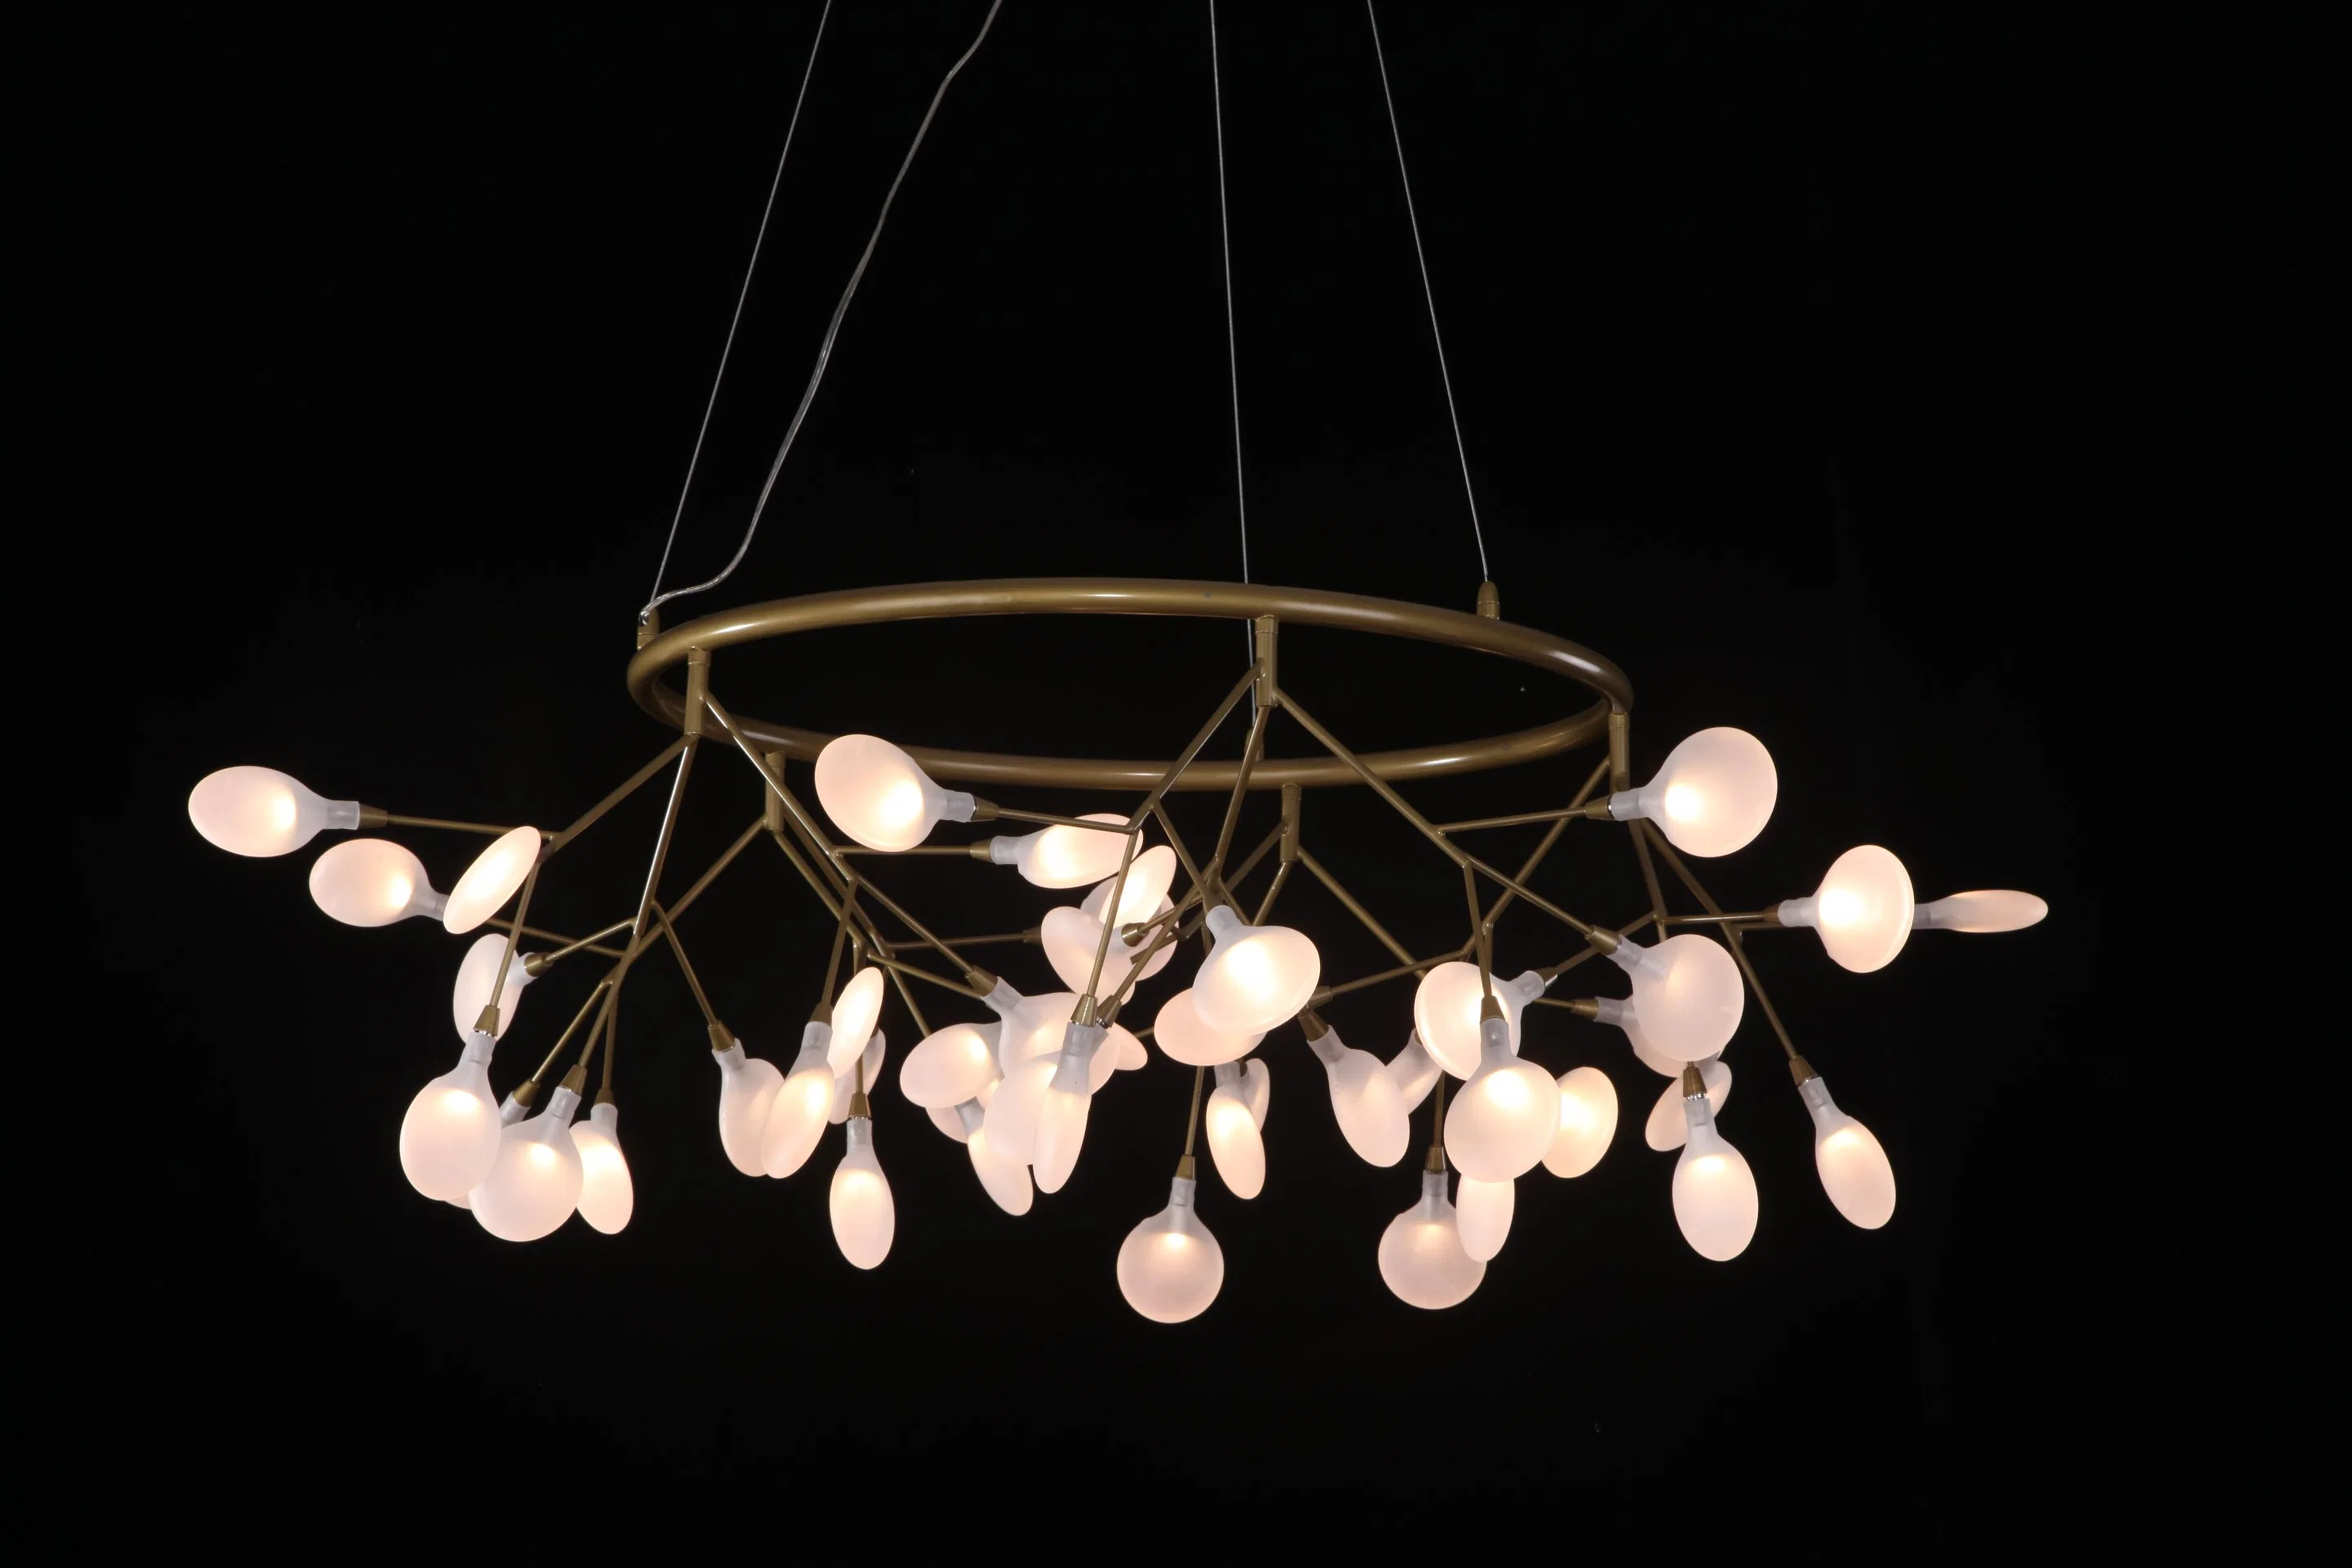 Neues Produkt Luxus-Stil Indoor-Dekoration Eisen-Rahmen Klassischer Kronleuchter Geniale Kristall Kronleuchter Beleuchtung